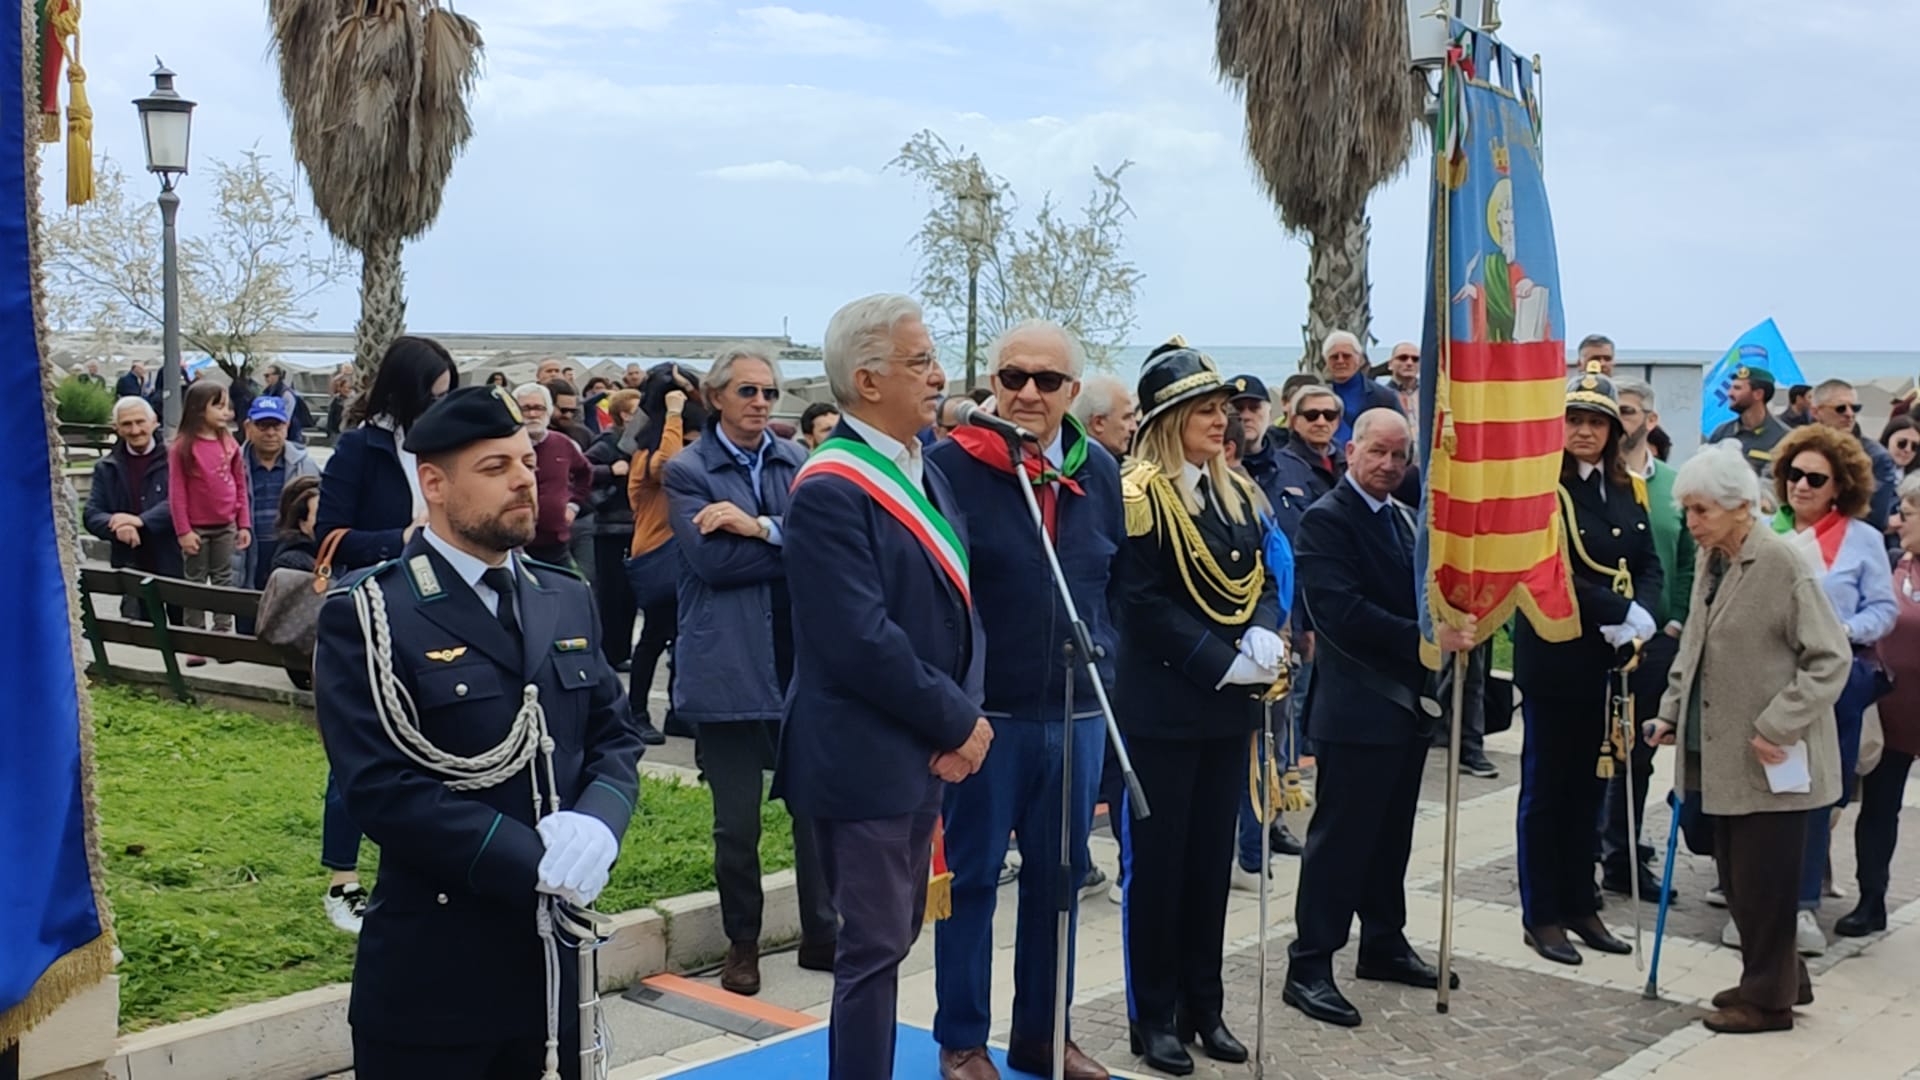 Nel giorno della Liberazione si inaugura a Salerno Piazza XXV Aprile